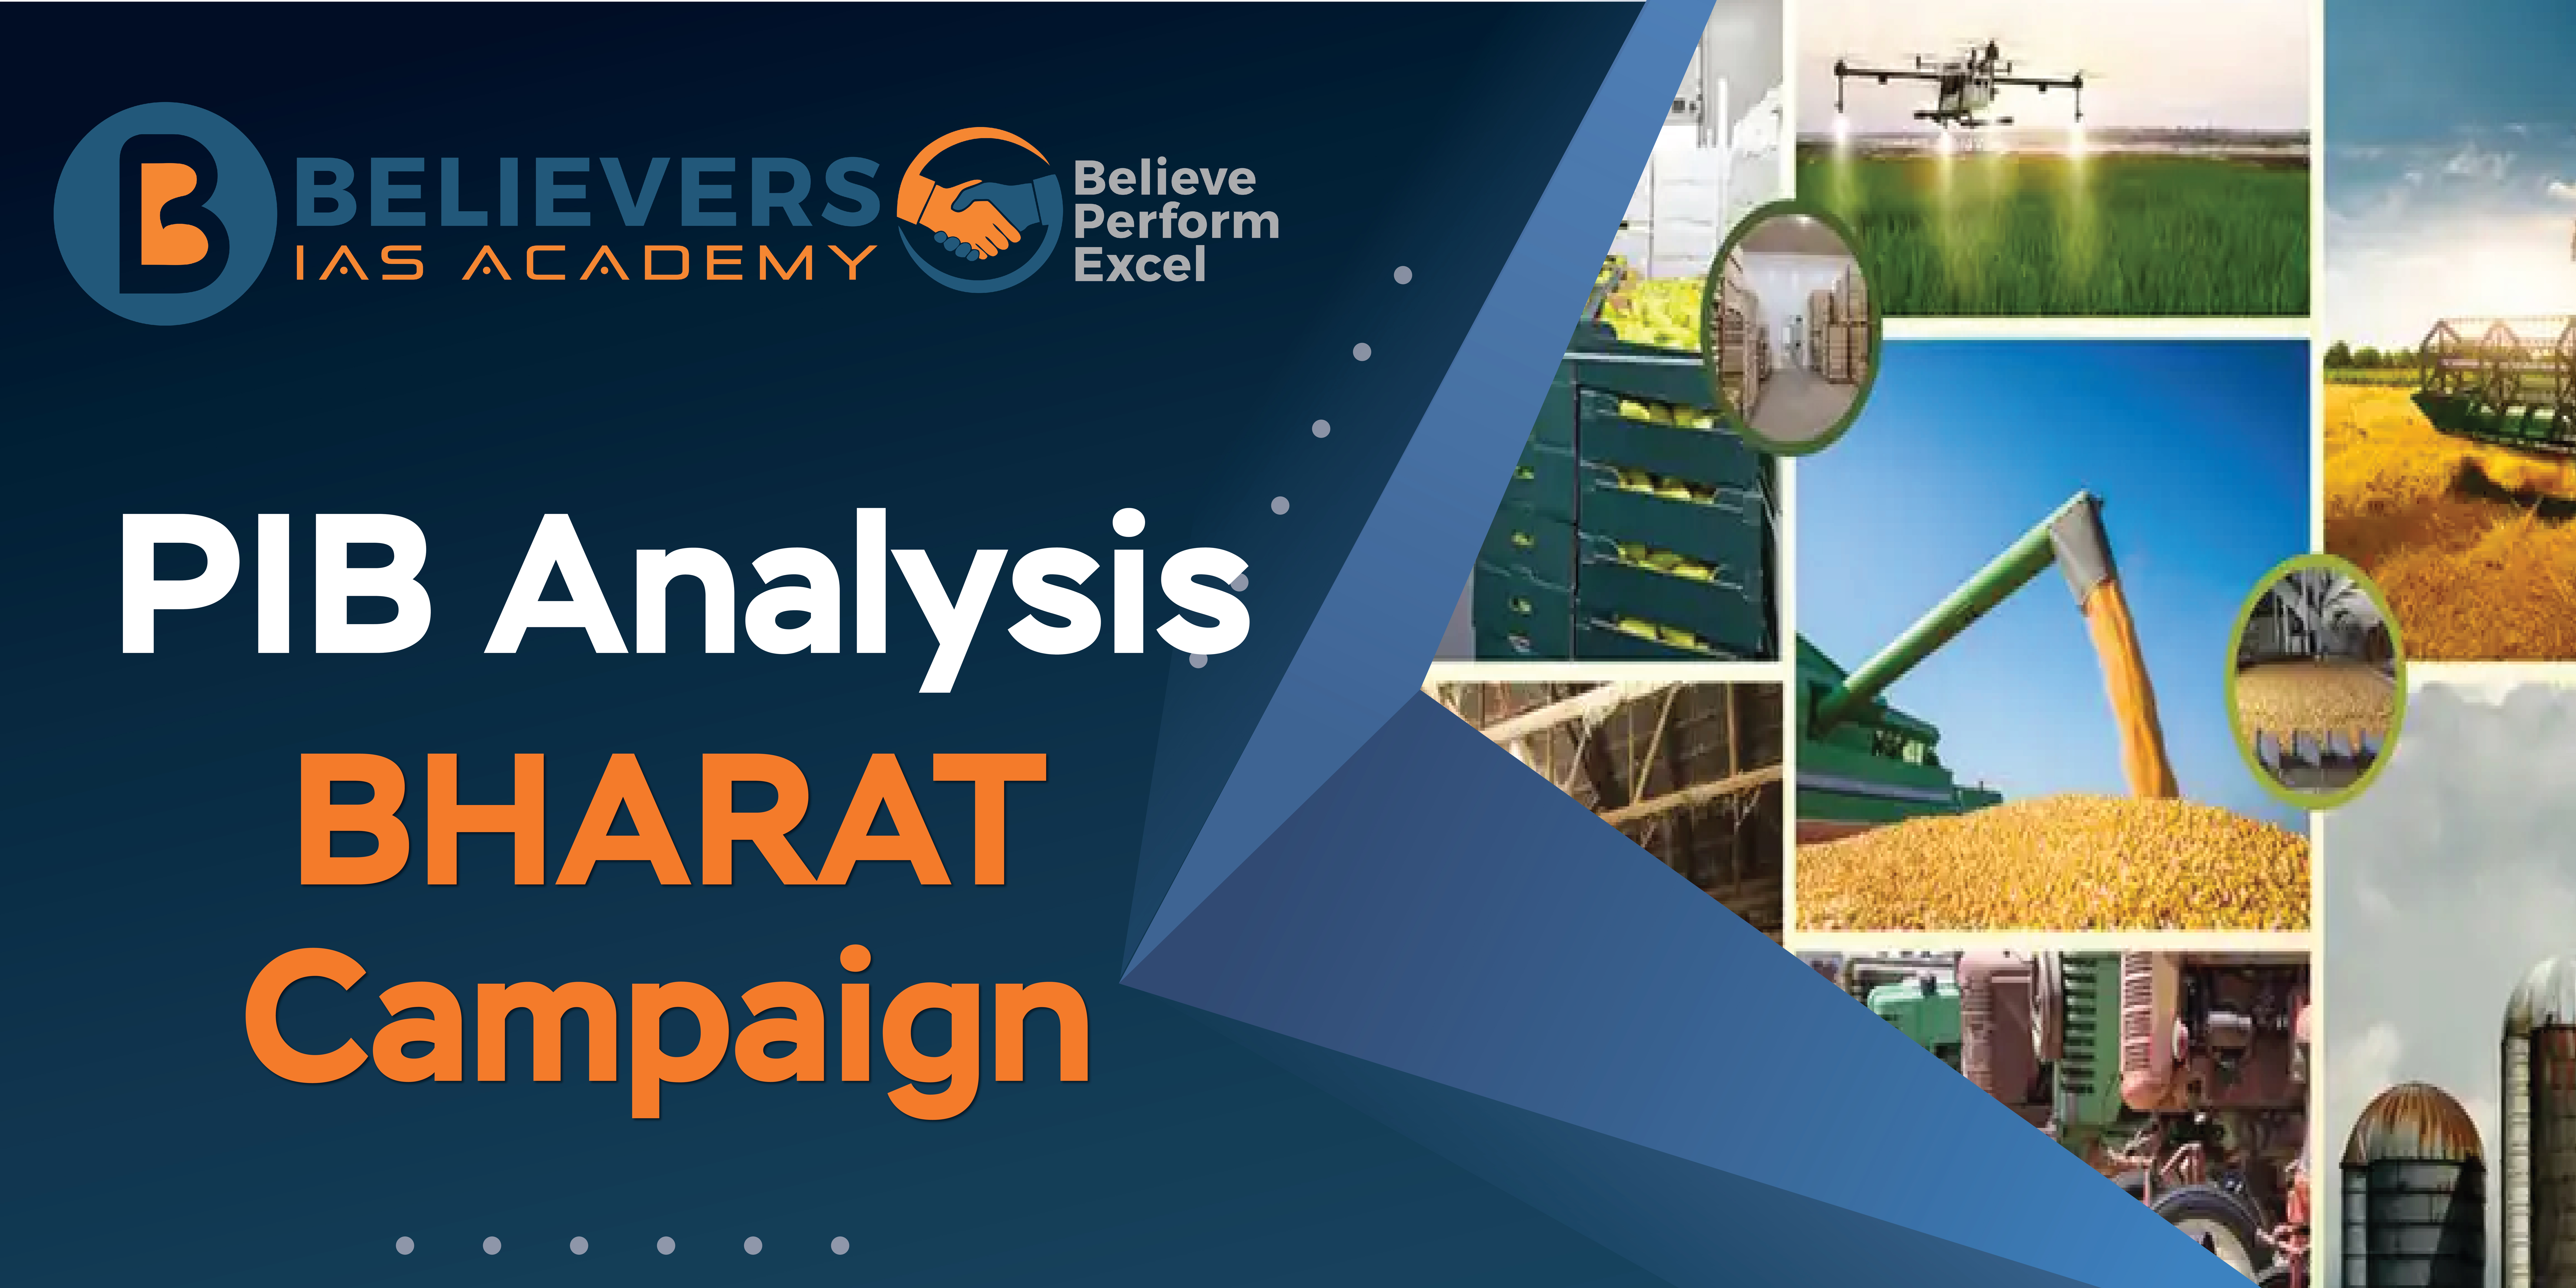 BHARAT Campaign